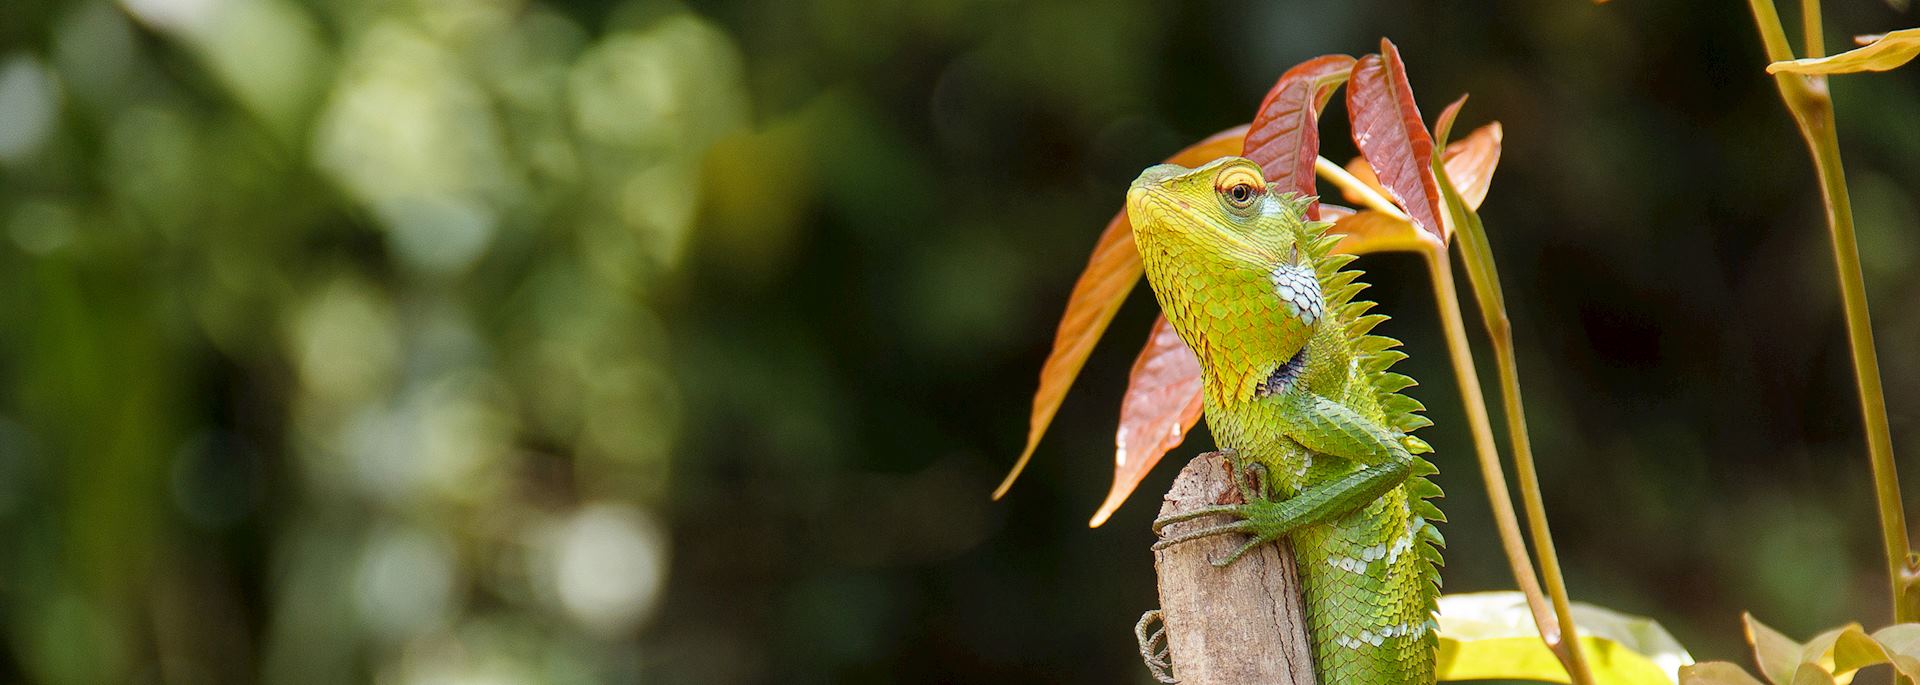 Green lizard, Sinharaja Biosphere Reserve